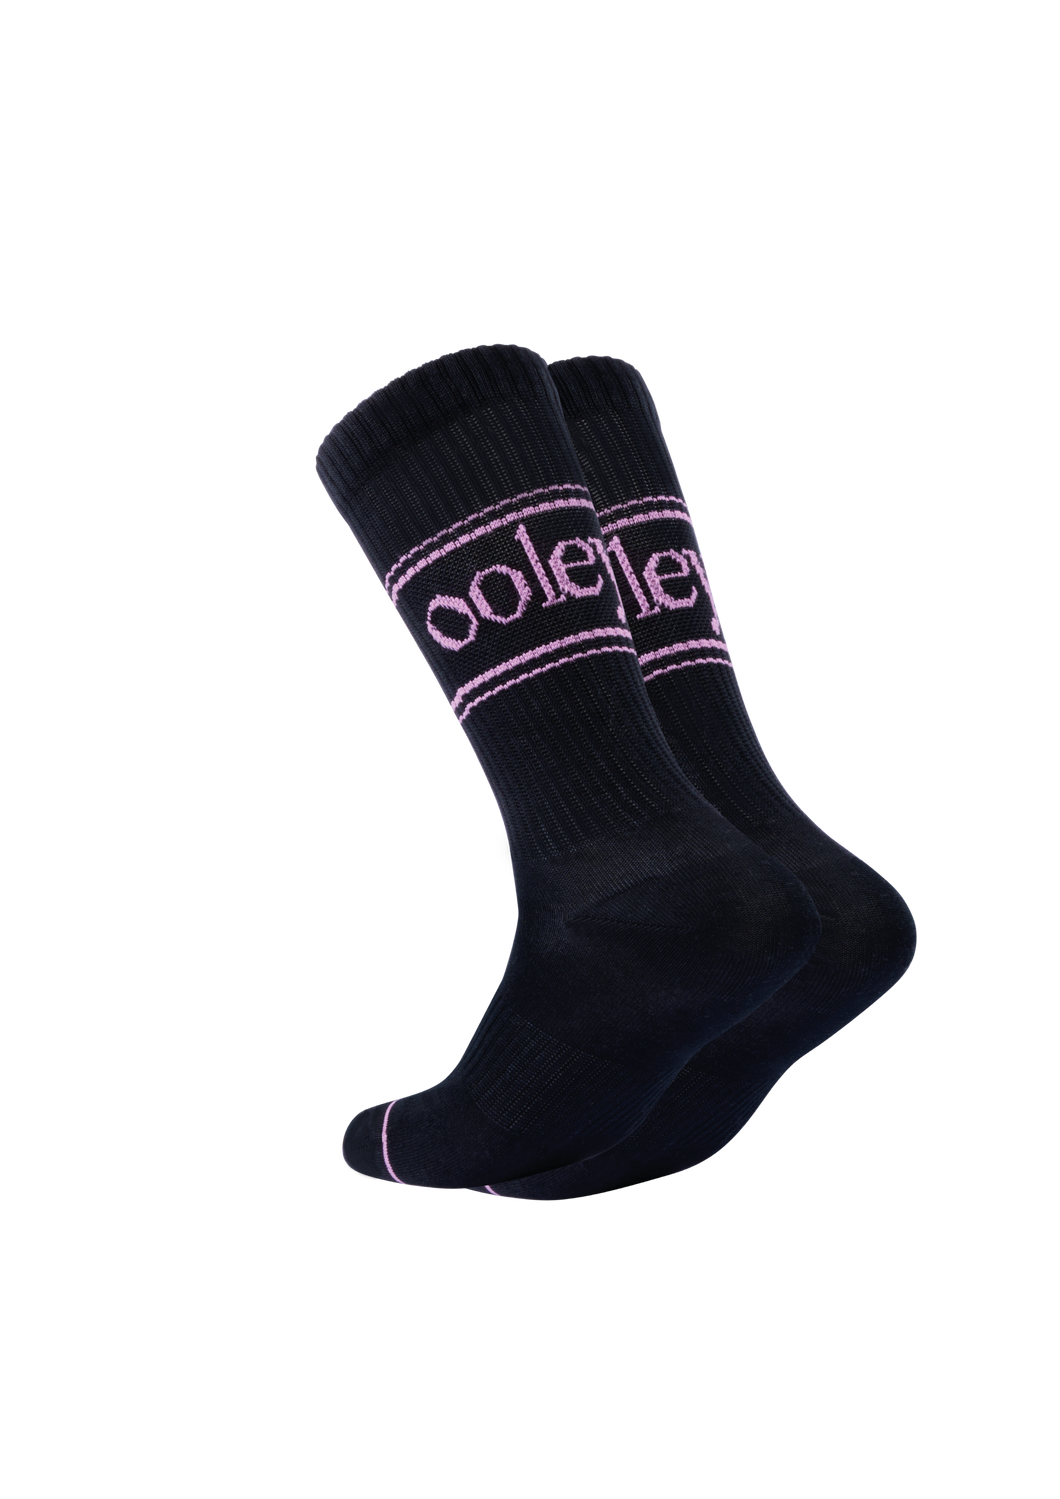 OOLEY Socks Pastel Black